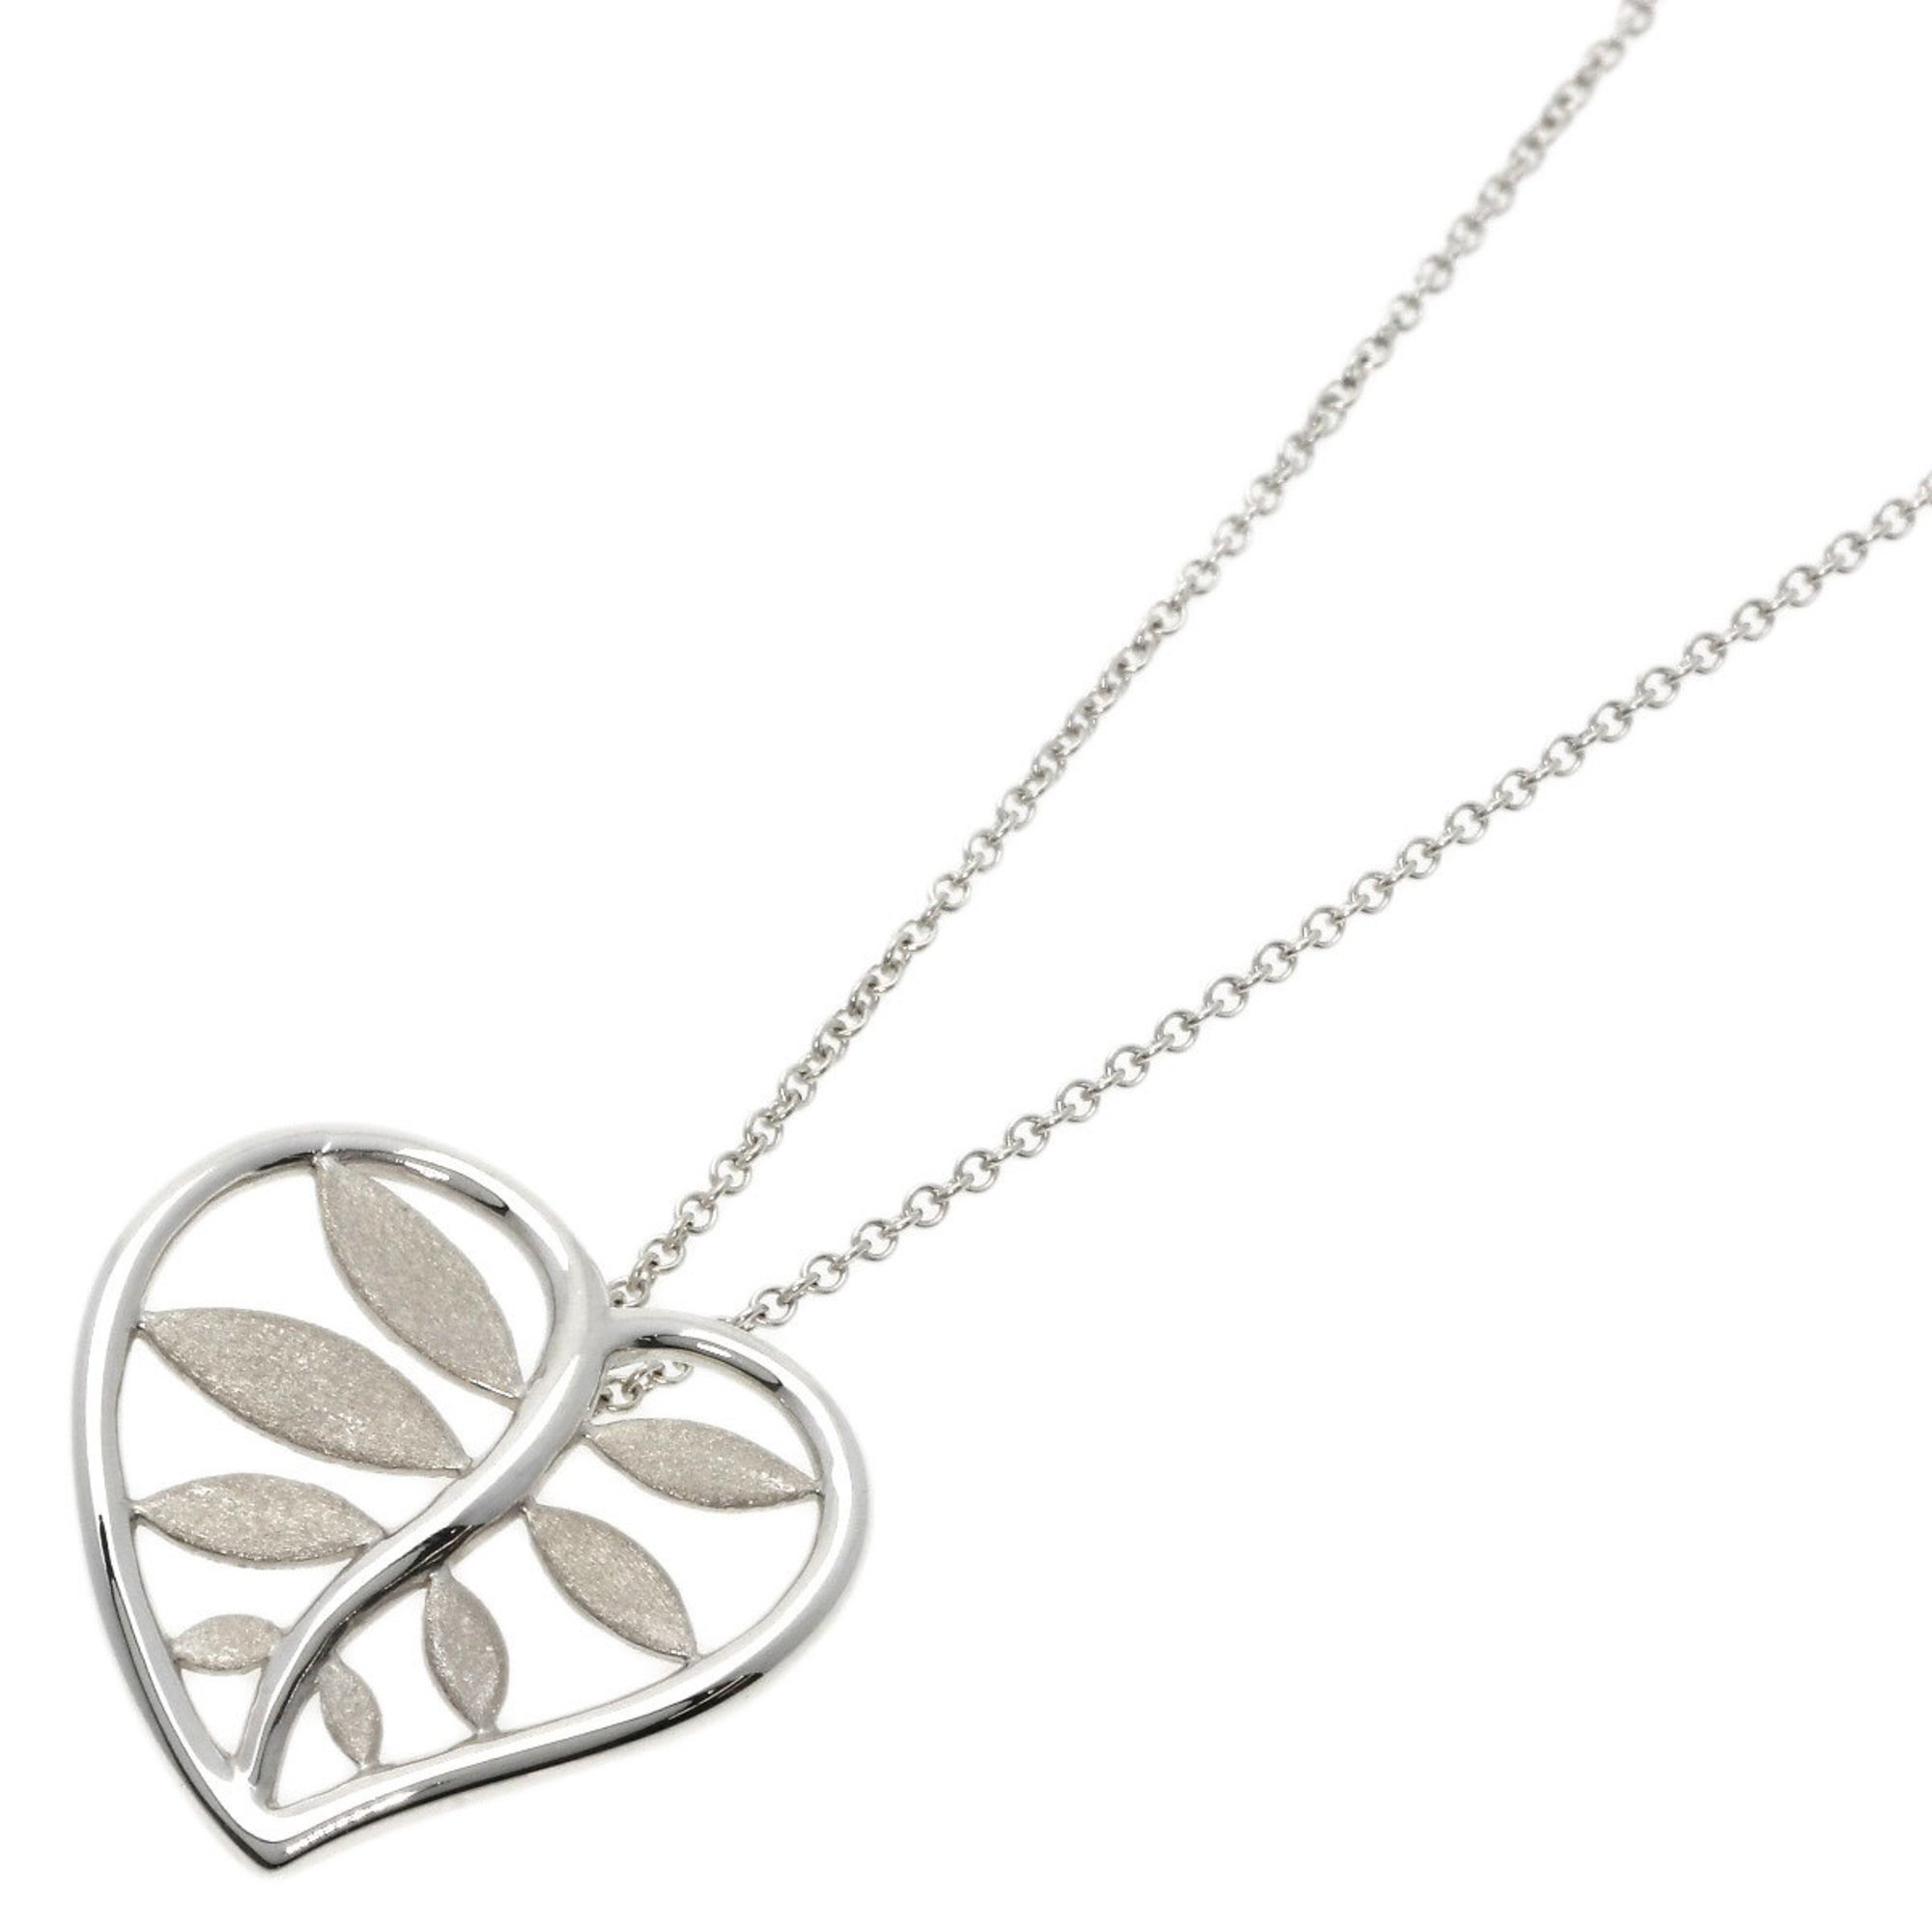 Tiffany leaf necklace silver ladies